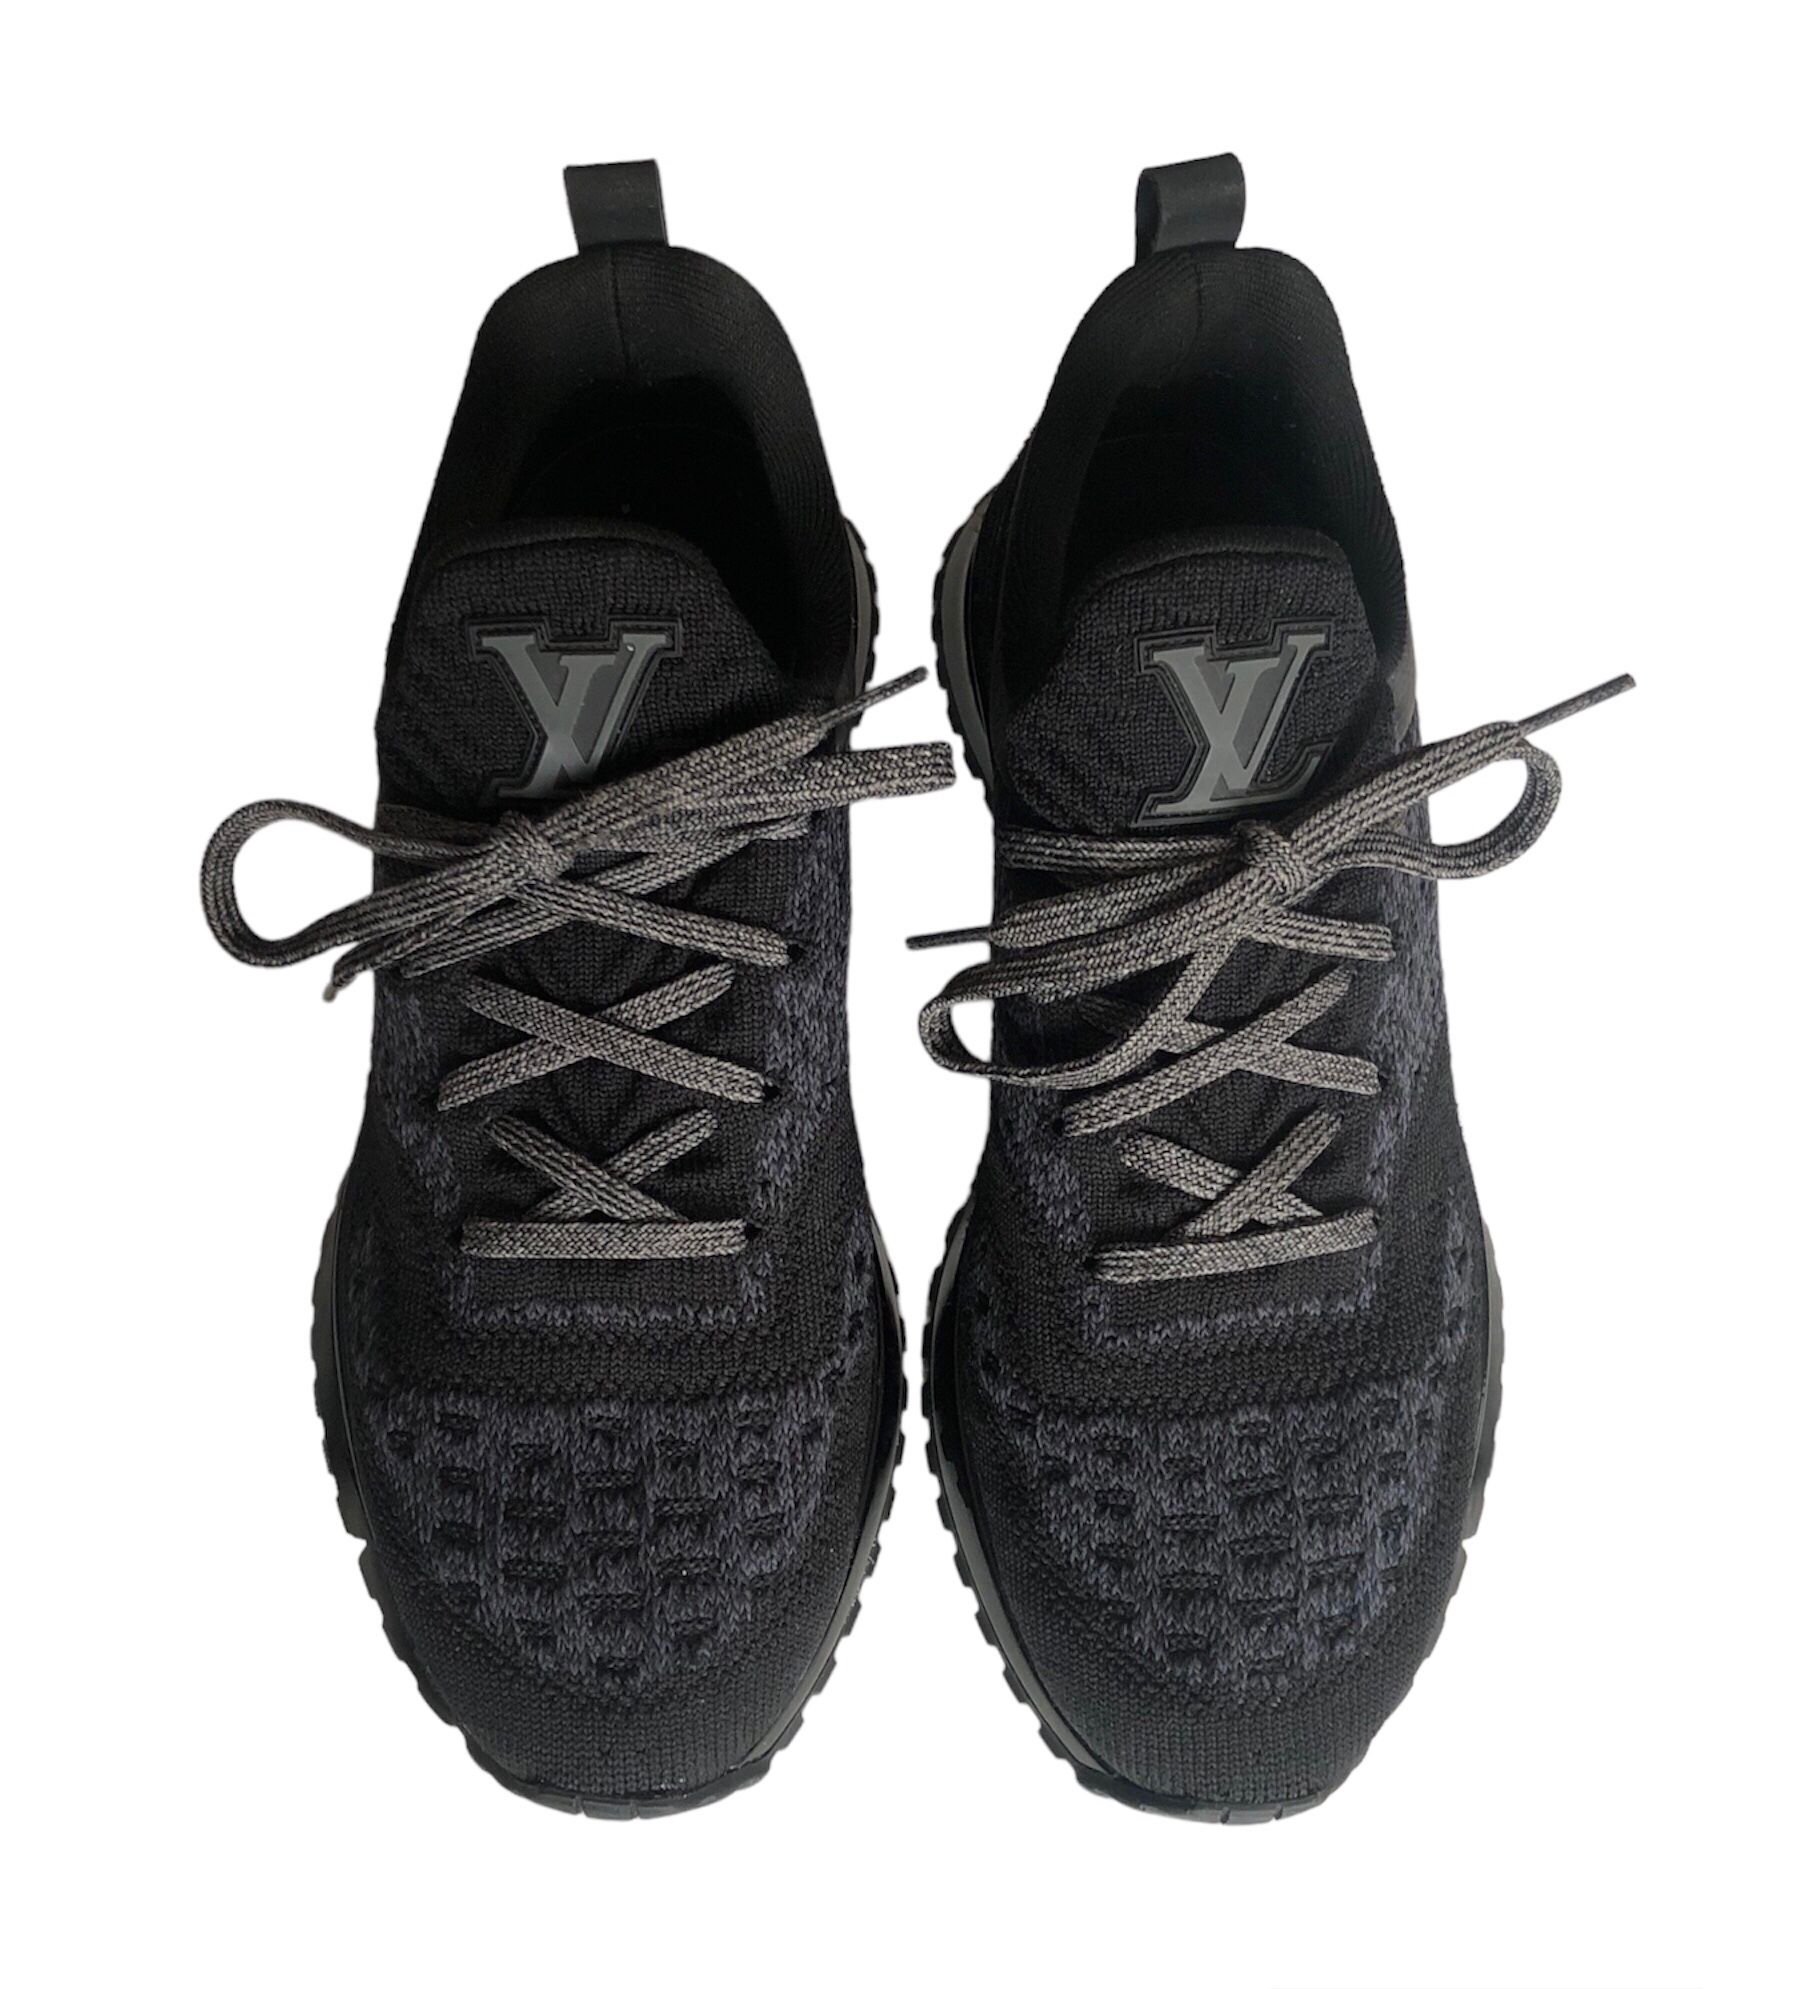 Authentic Black Louis Vuitton VNR Knit Sneakers